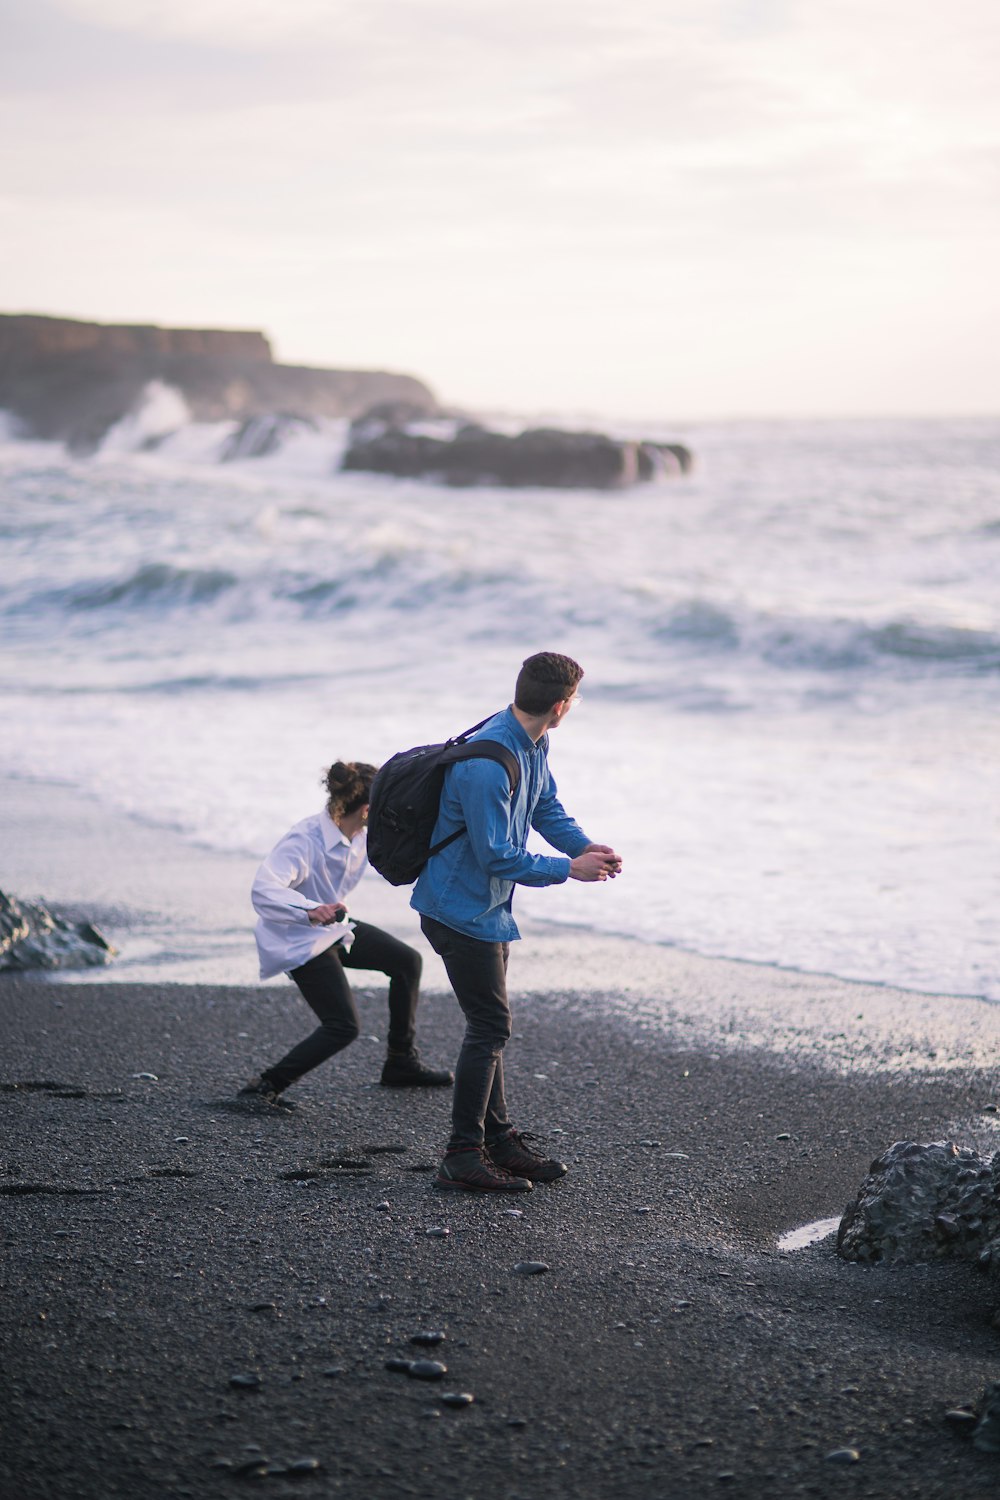 Mann in blauer Jacke und schwarzer Hose tagsüber am Strand spazieren